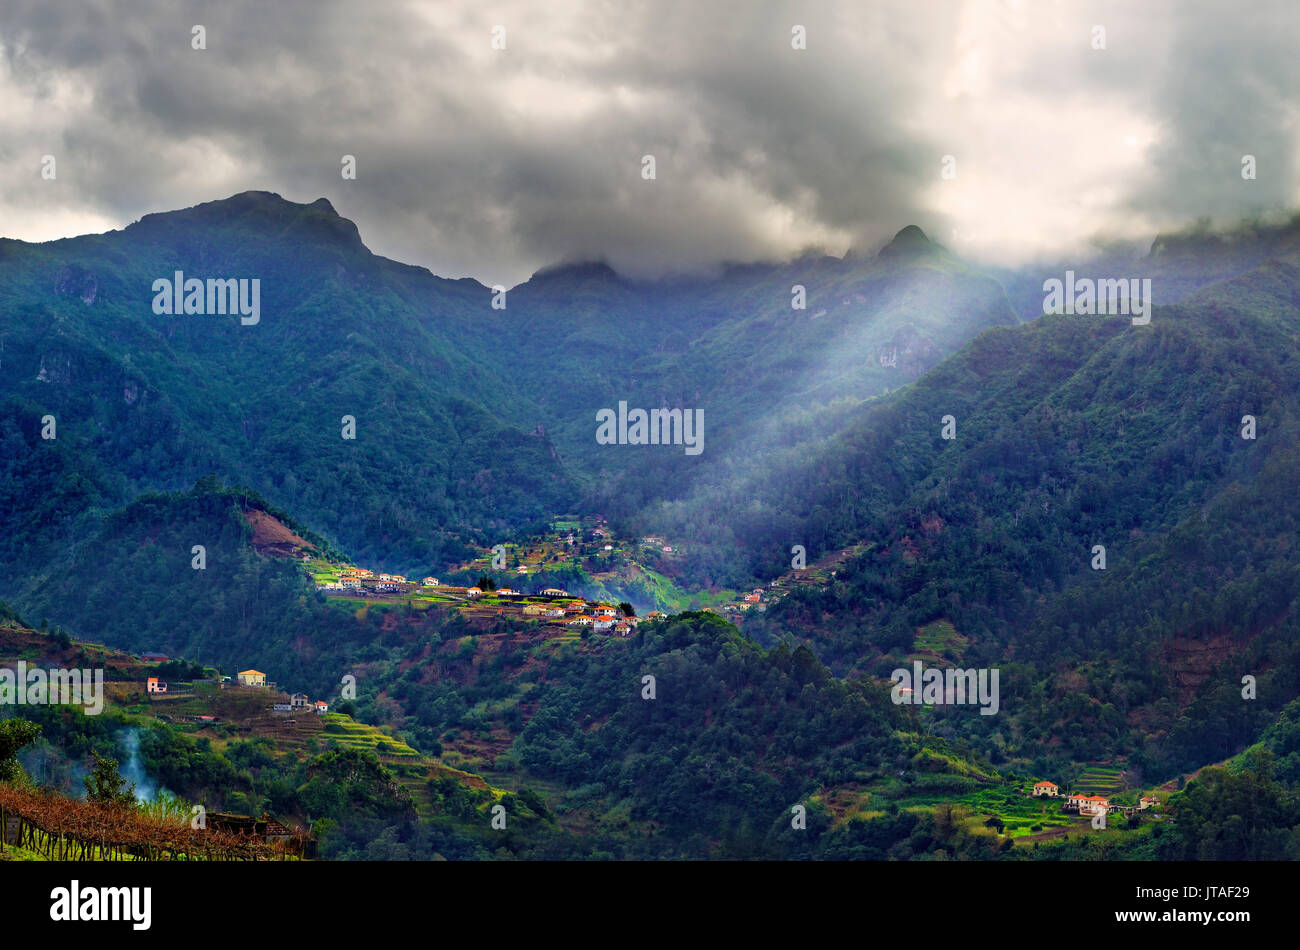 Erhöhten Blick auf einem abgelegenen Dorf und Baum bedeckte Hügel und Berge in der Nähe von Sao Vicente Madeira, Portugal, Atlantik, Europa Stockfoto